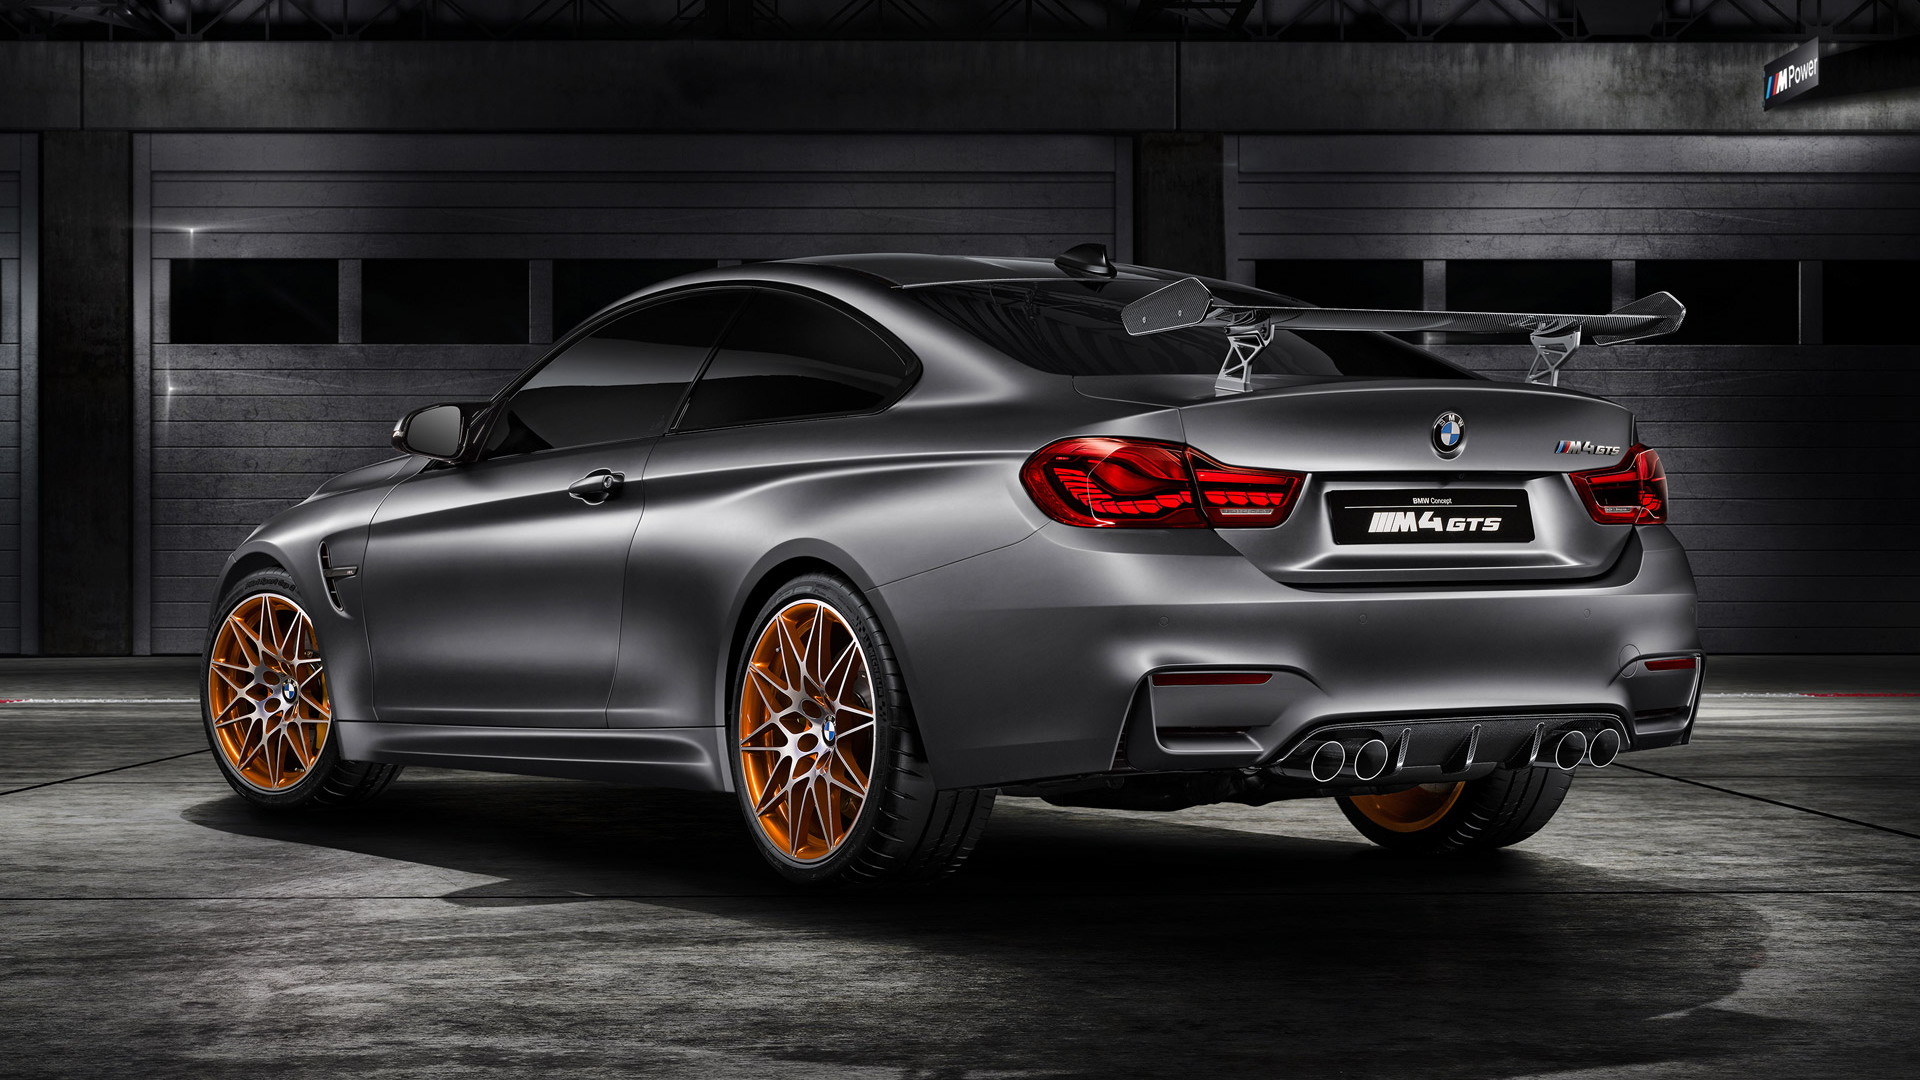 BMW M4 GTS concept, 2015 Pebble Beach Concours d'Elegance